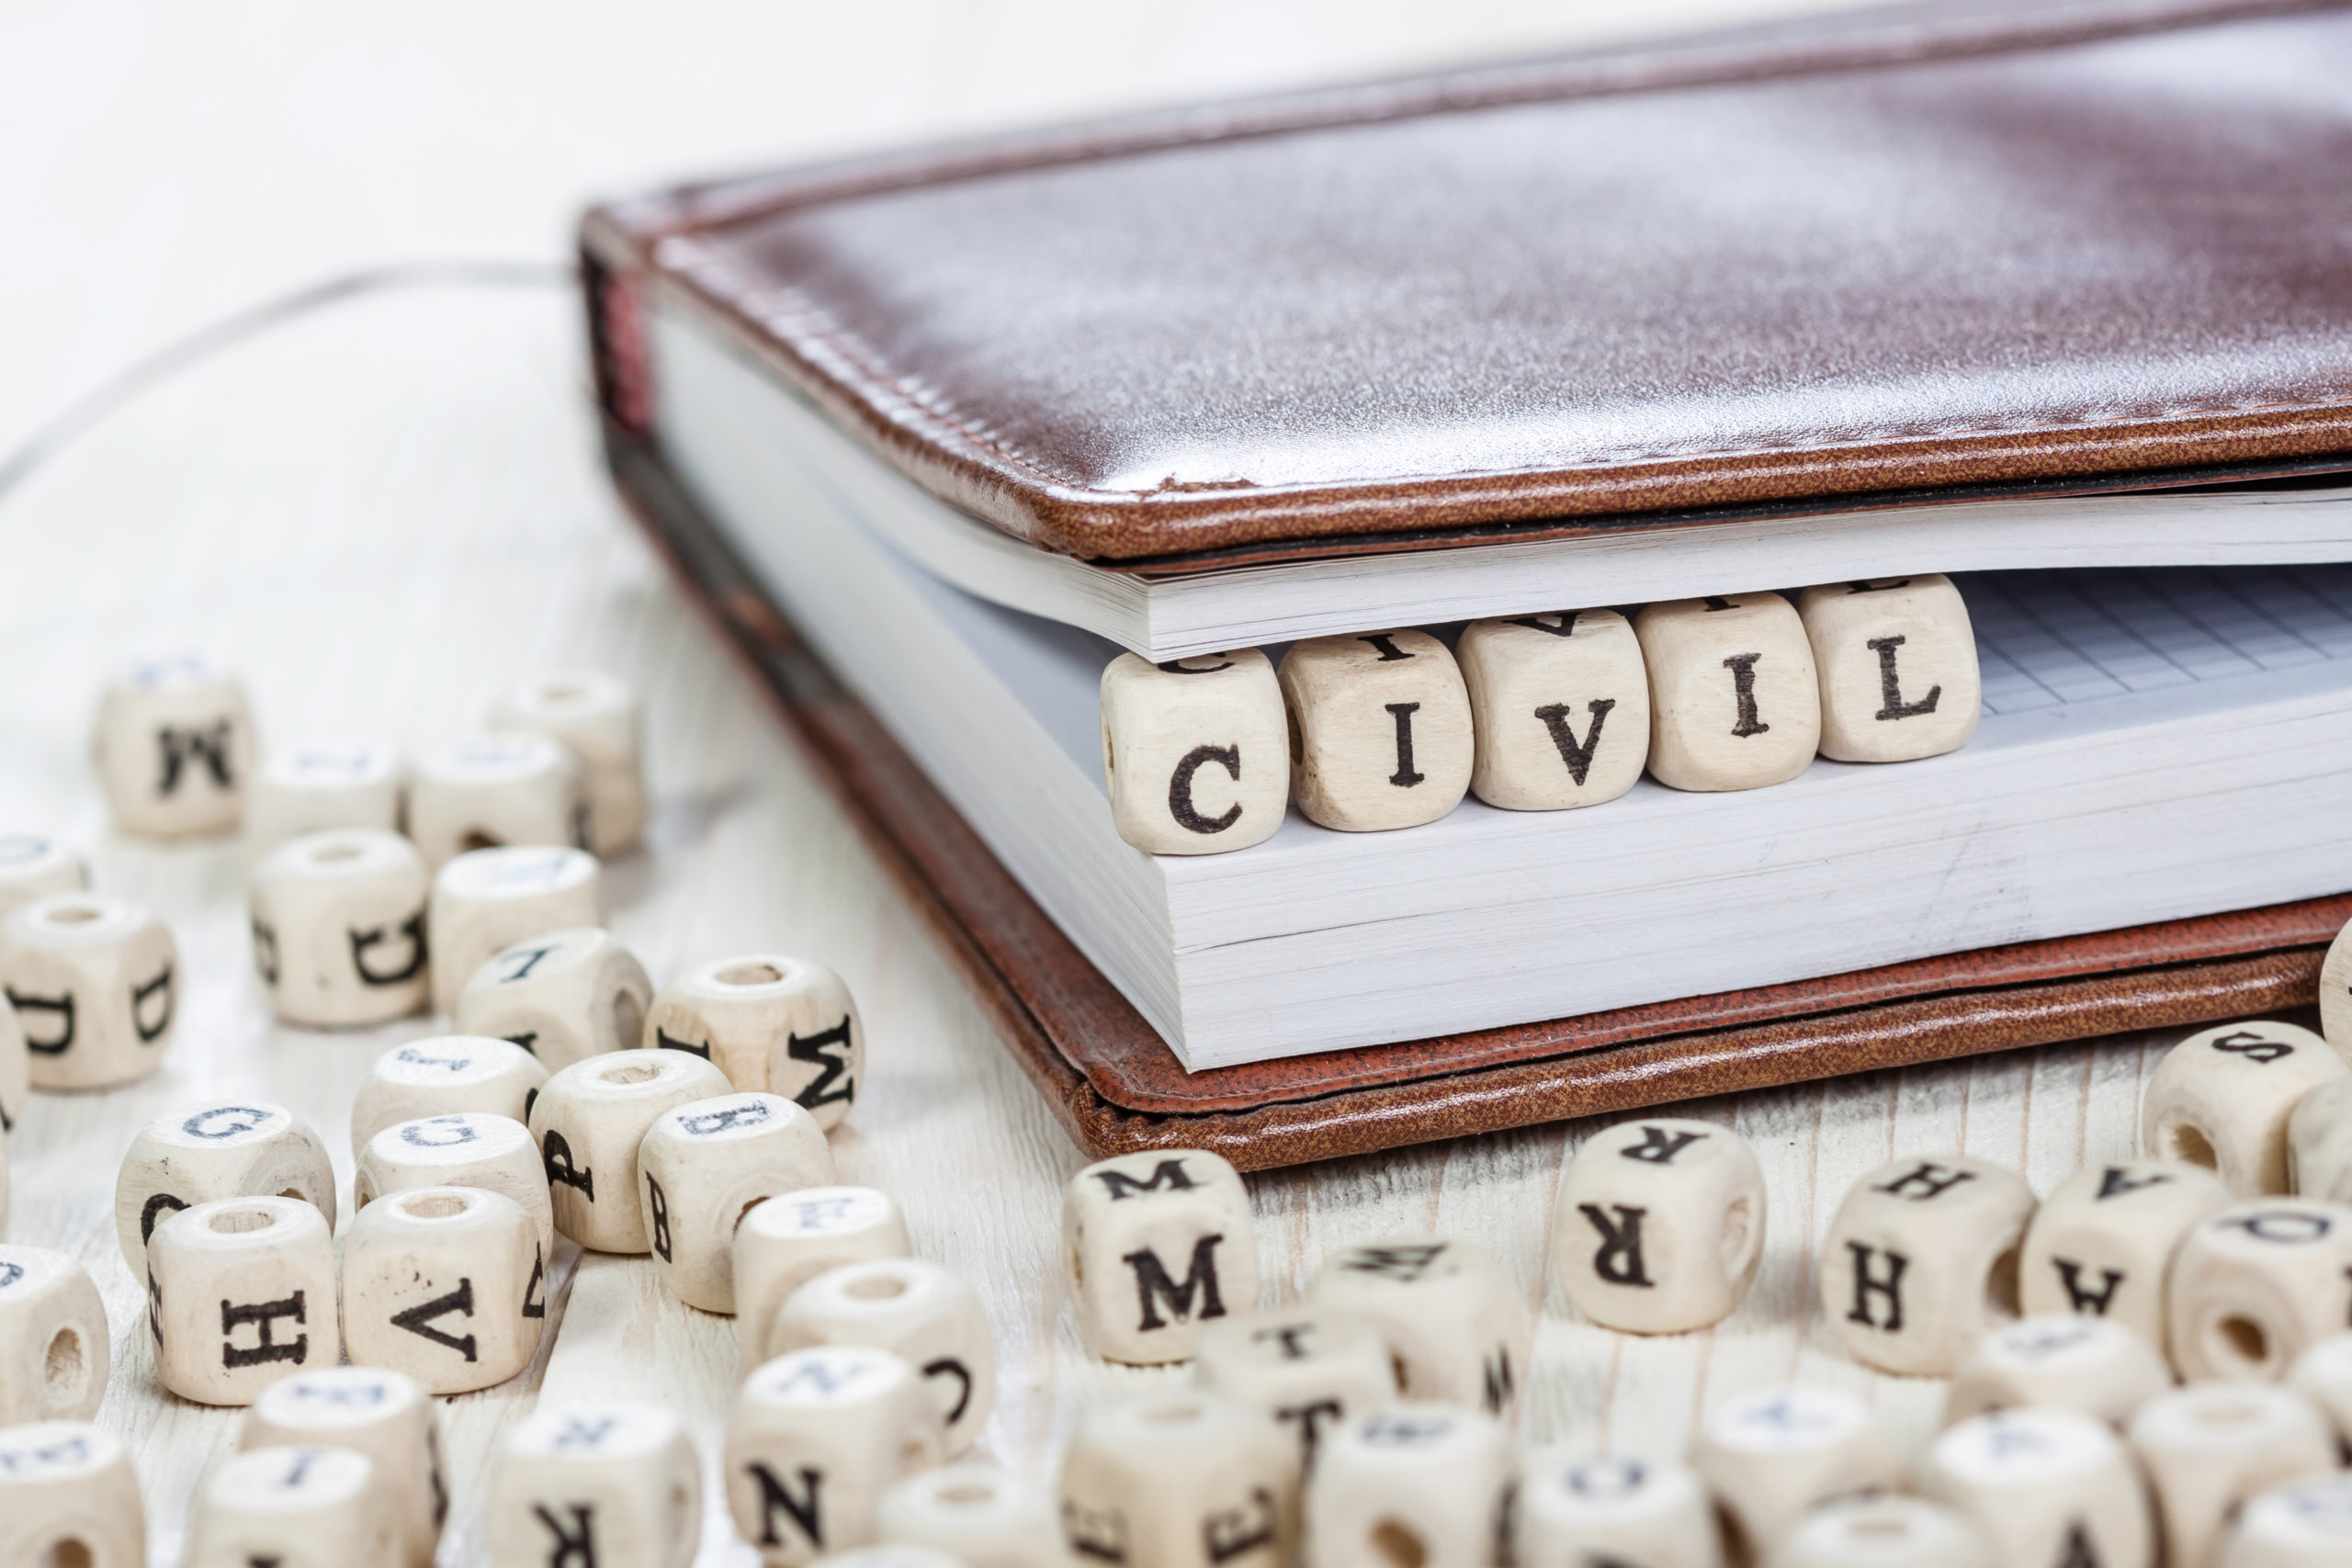 'Civil' Written On Wooden Block